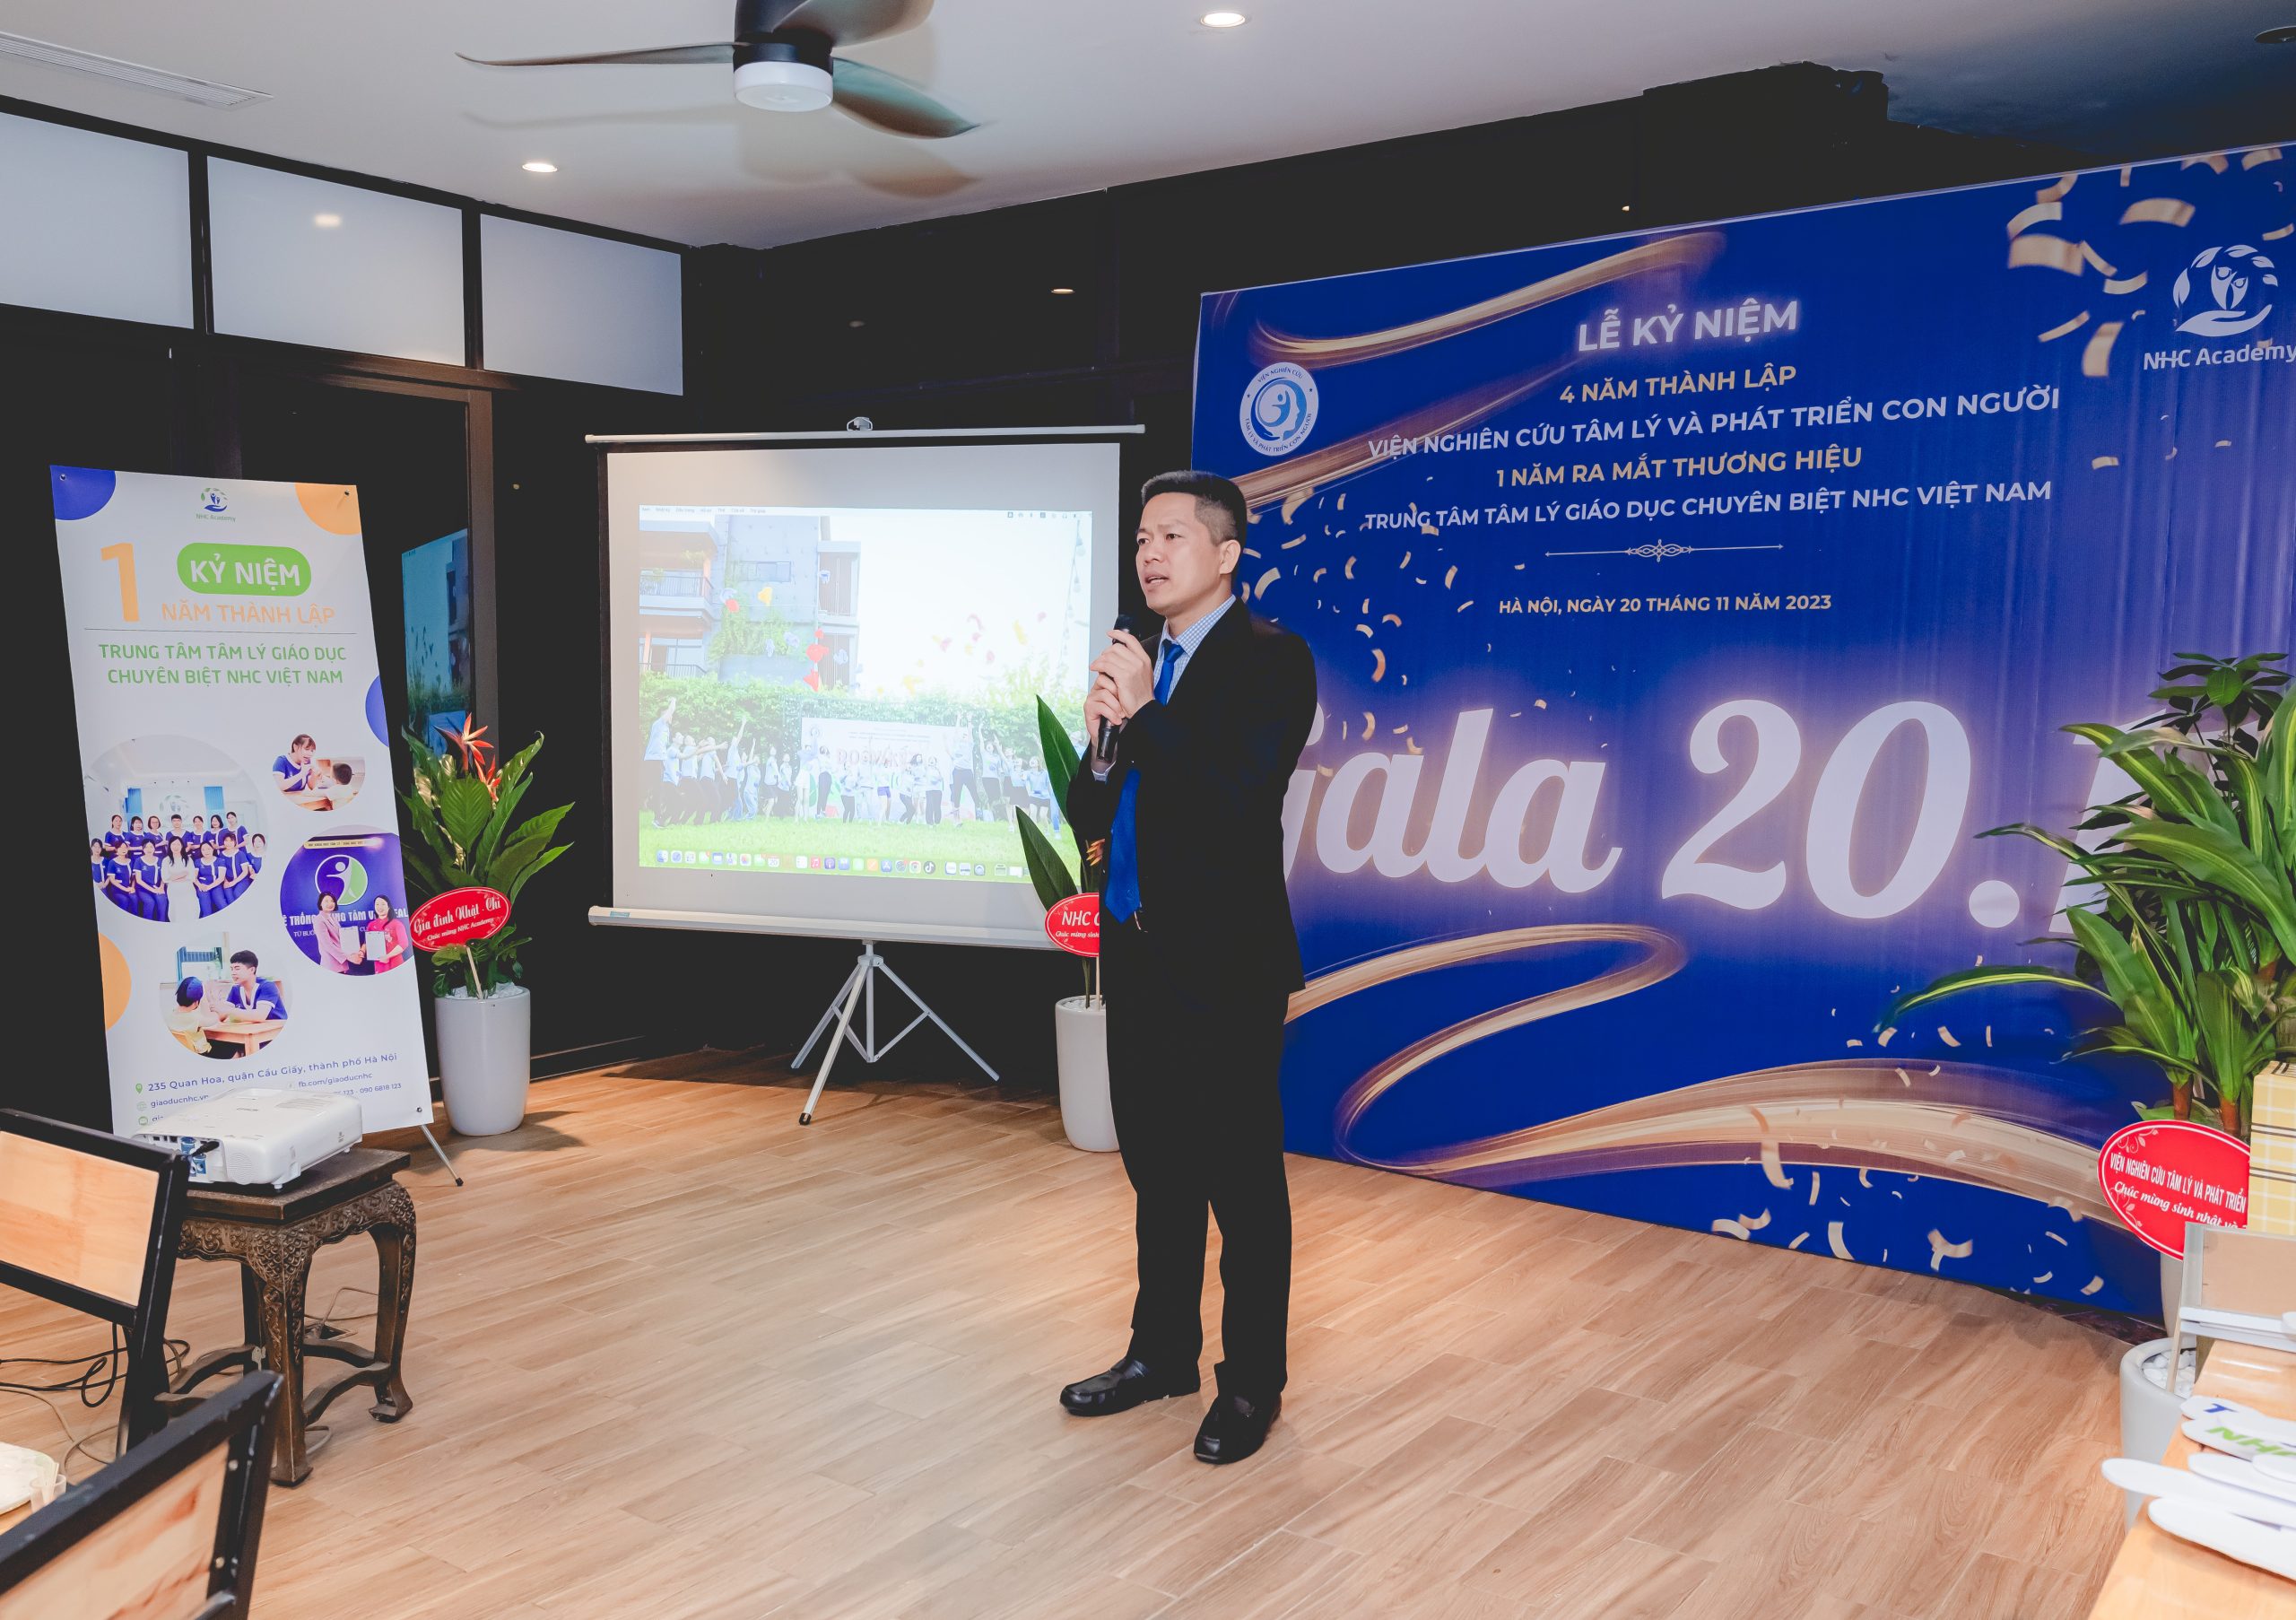 Ông Nguyễn Quang Hưng – Chủ tịch Hội đồng quản trị NHC Group đcó đôi lời phát biểu tại buổi lễ